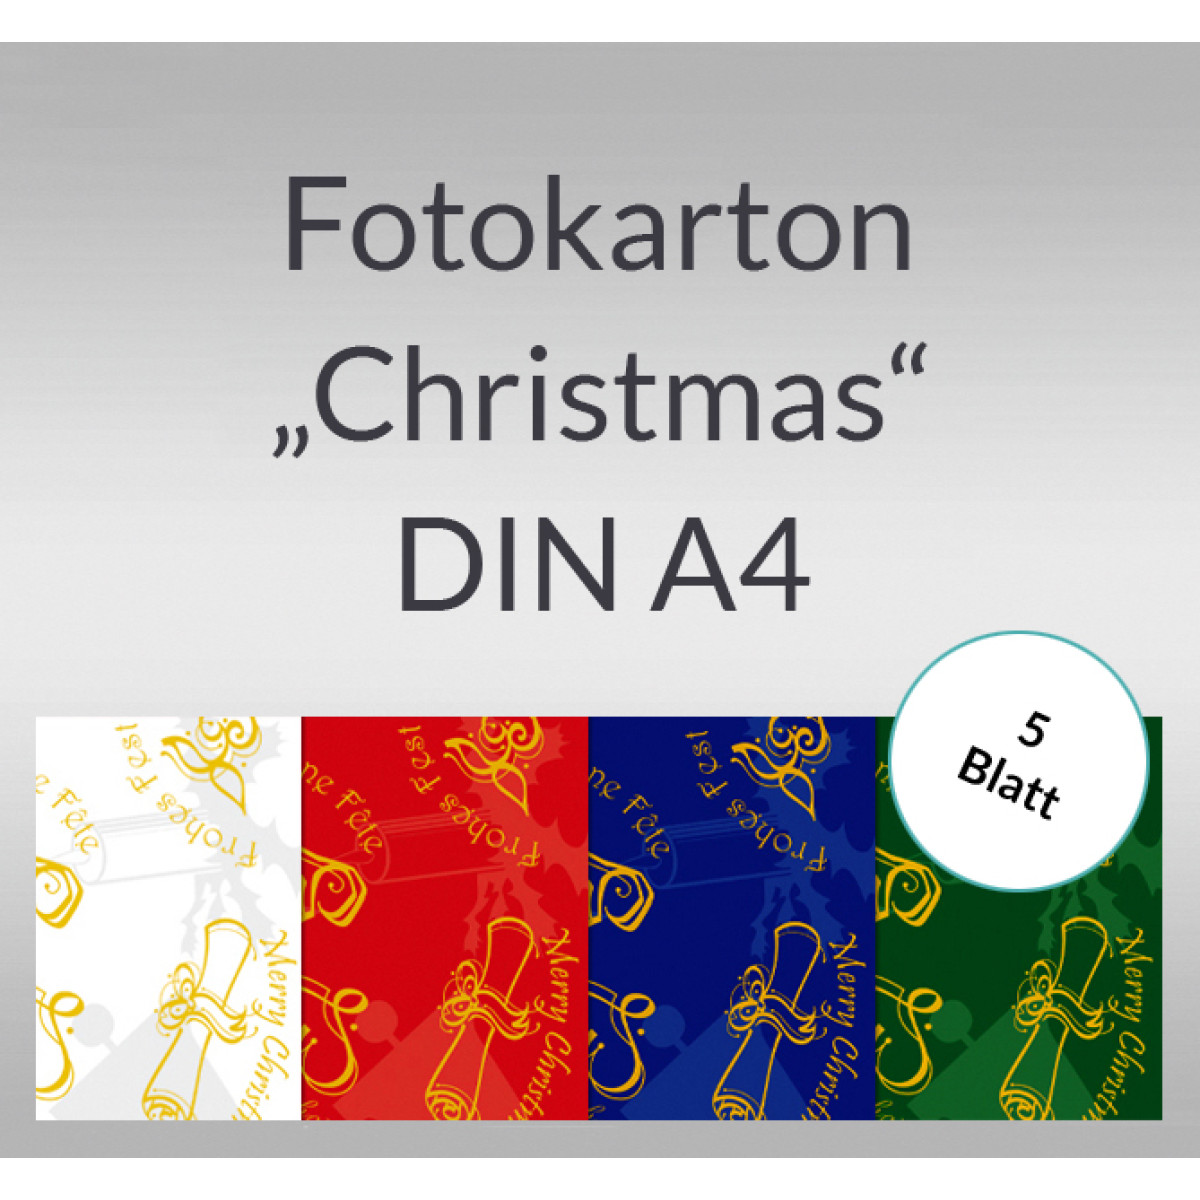 Fotokarton "Christmas" DIN A4 - 5 Blatt